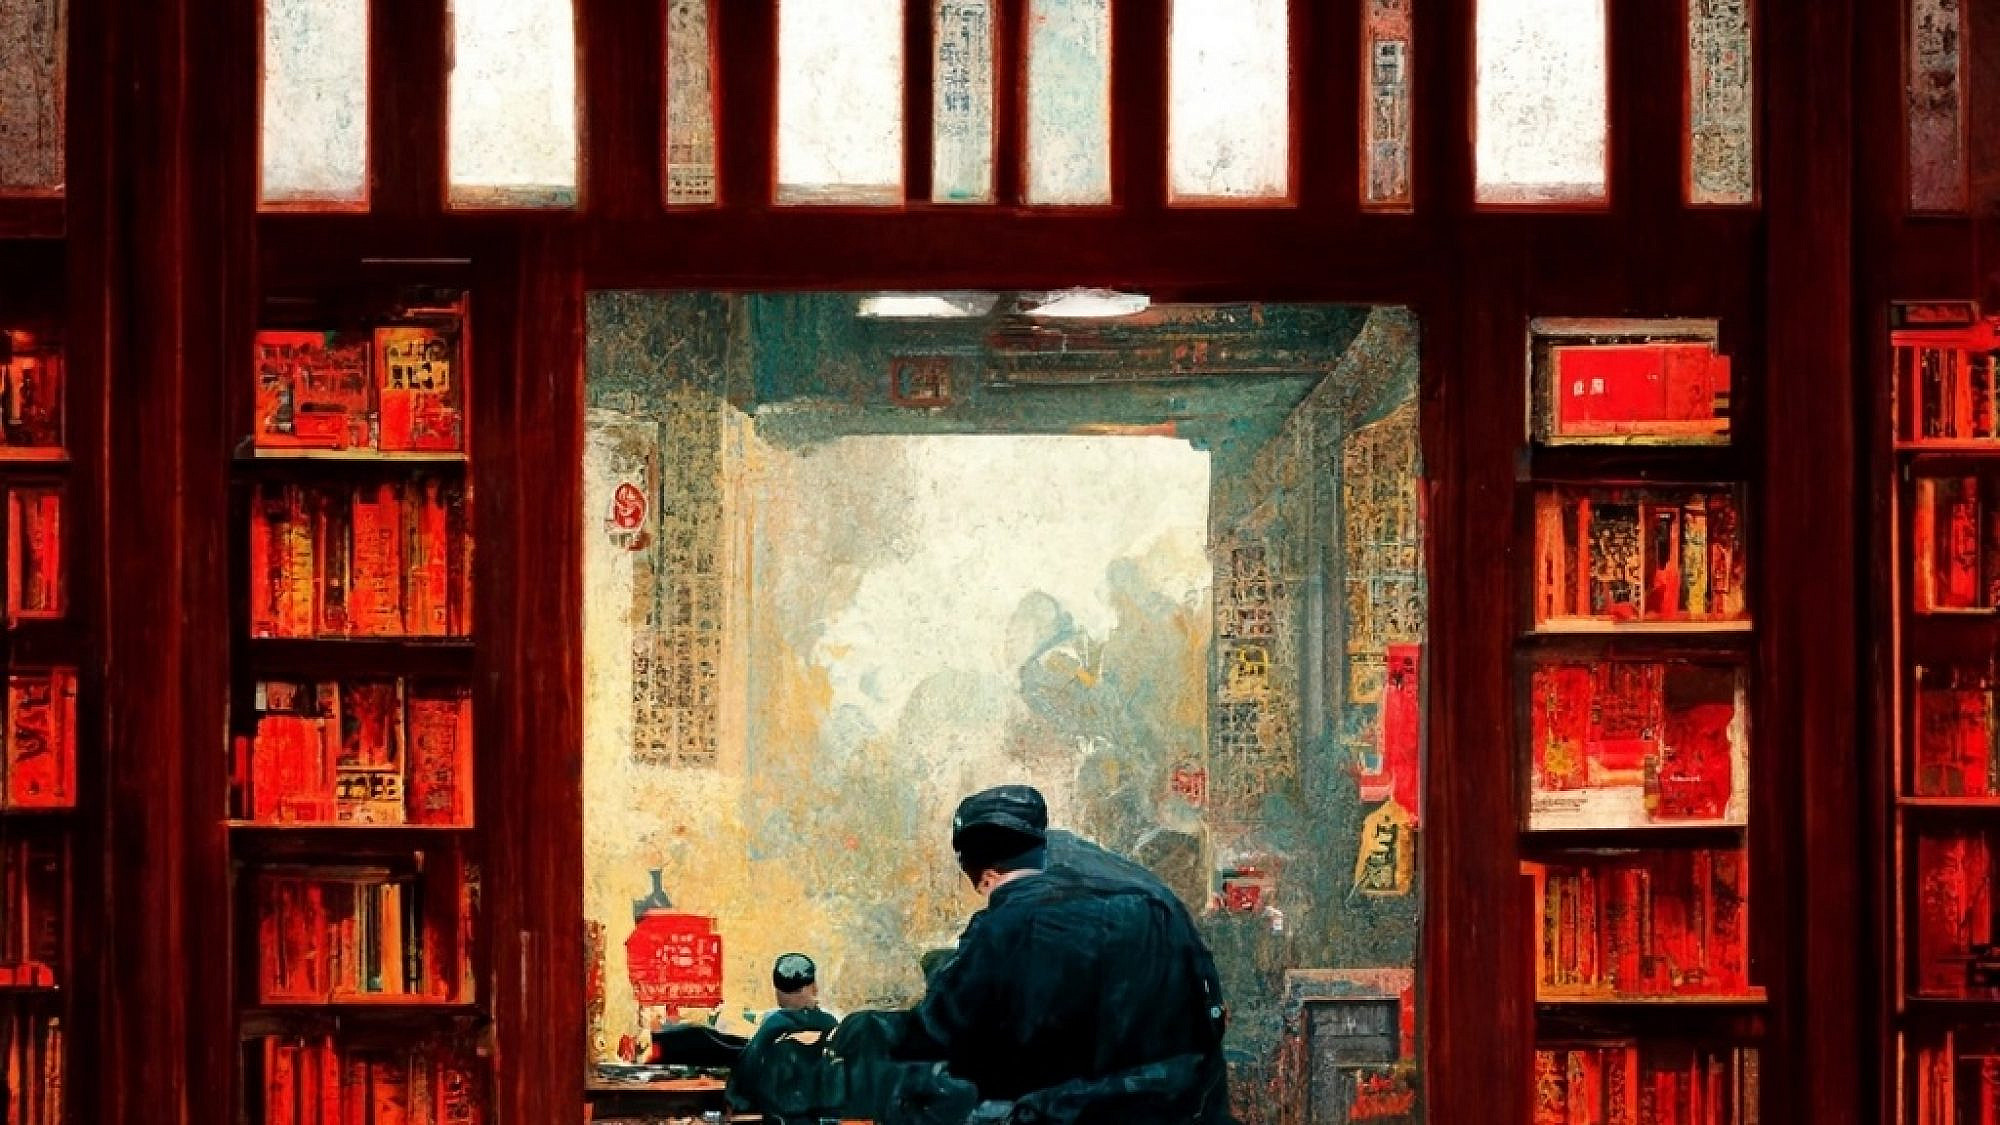 "סוכן נכנס לחדר הסיני, בו יושב אדם שלא יודע סינית", לפי מידג'ורני